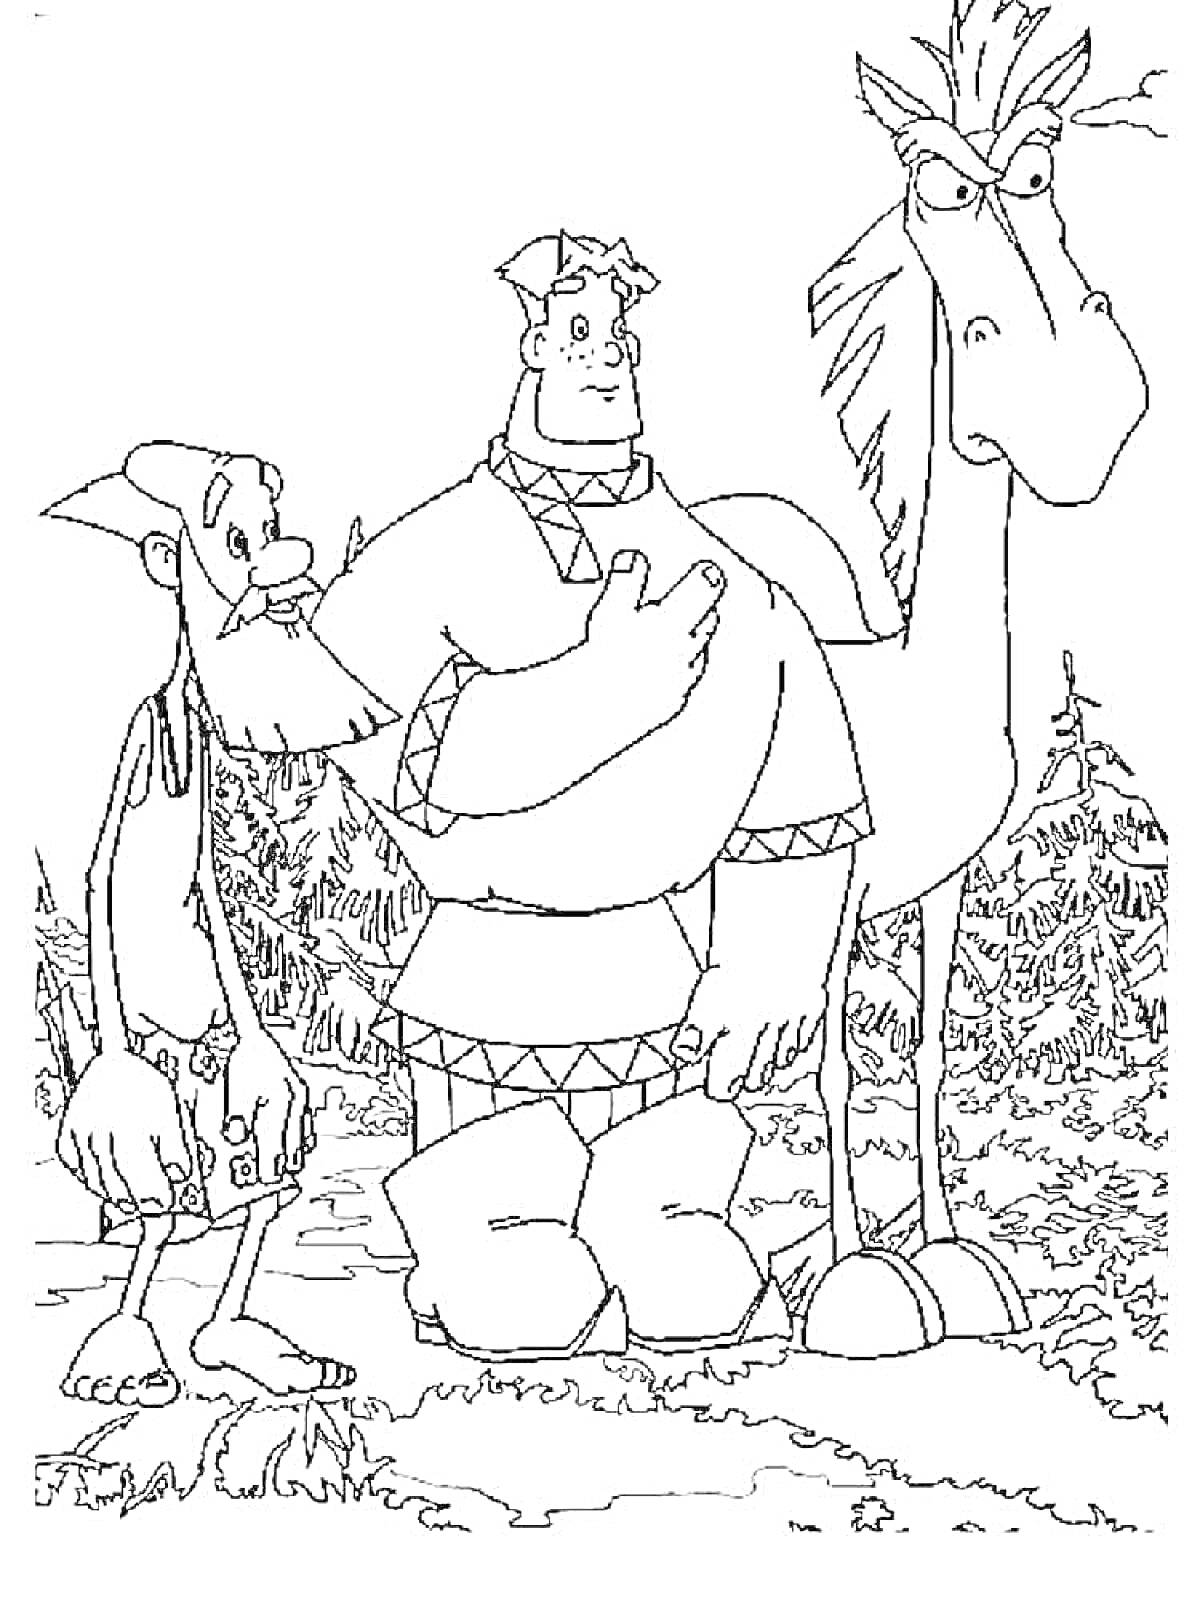 Раскраска Три богатыря: Добрыня Никитич с товарищем и конем на лесной поляне